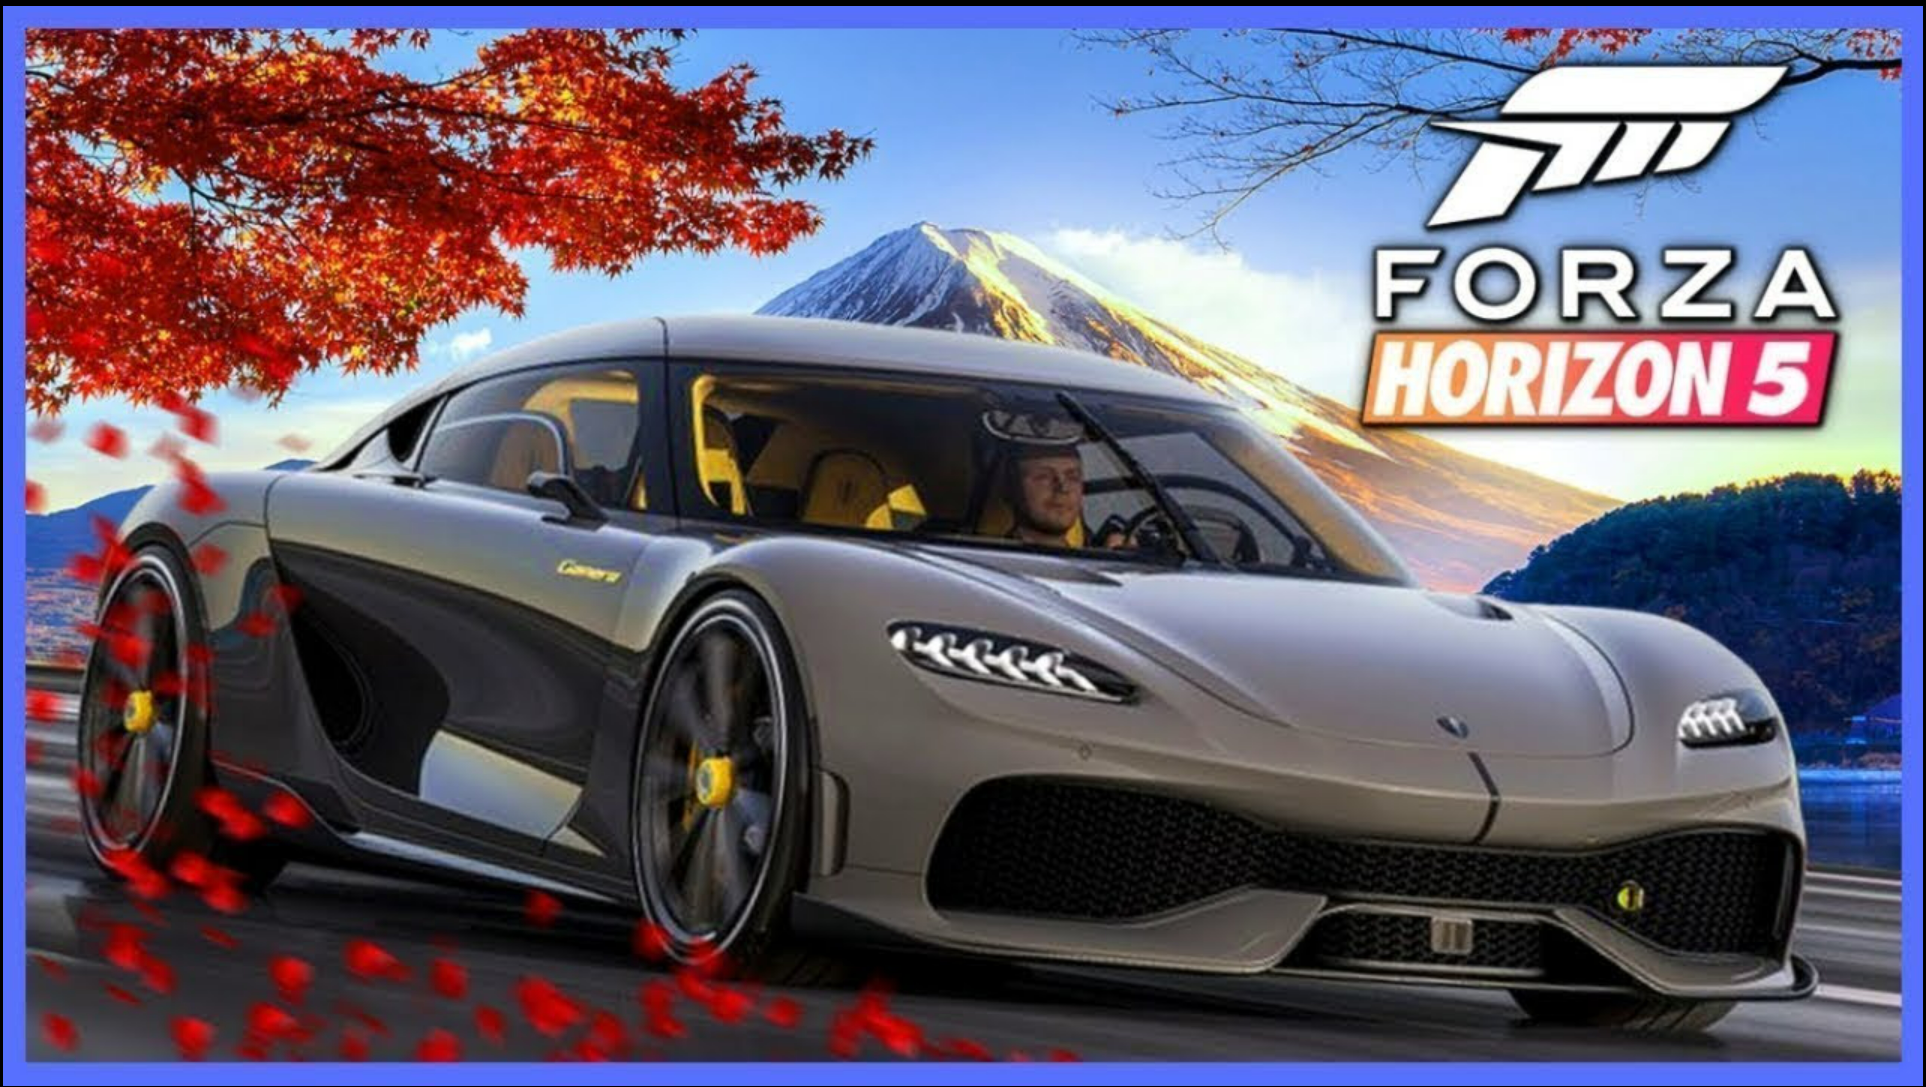 Forza horizon 2021. Форза хорайзен 5. Forza Horizon 5 Premium Edition. Forza Horizon 5 Xbox one. Форза хорайзон 5 гонки.